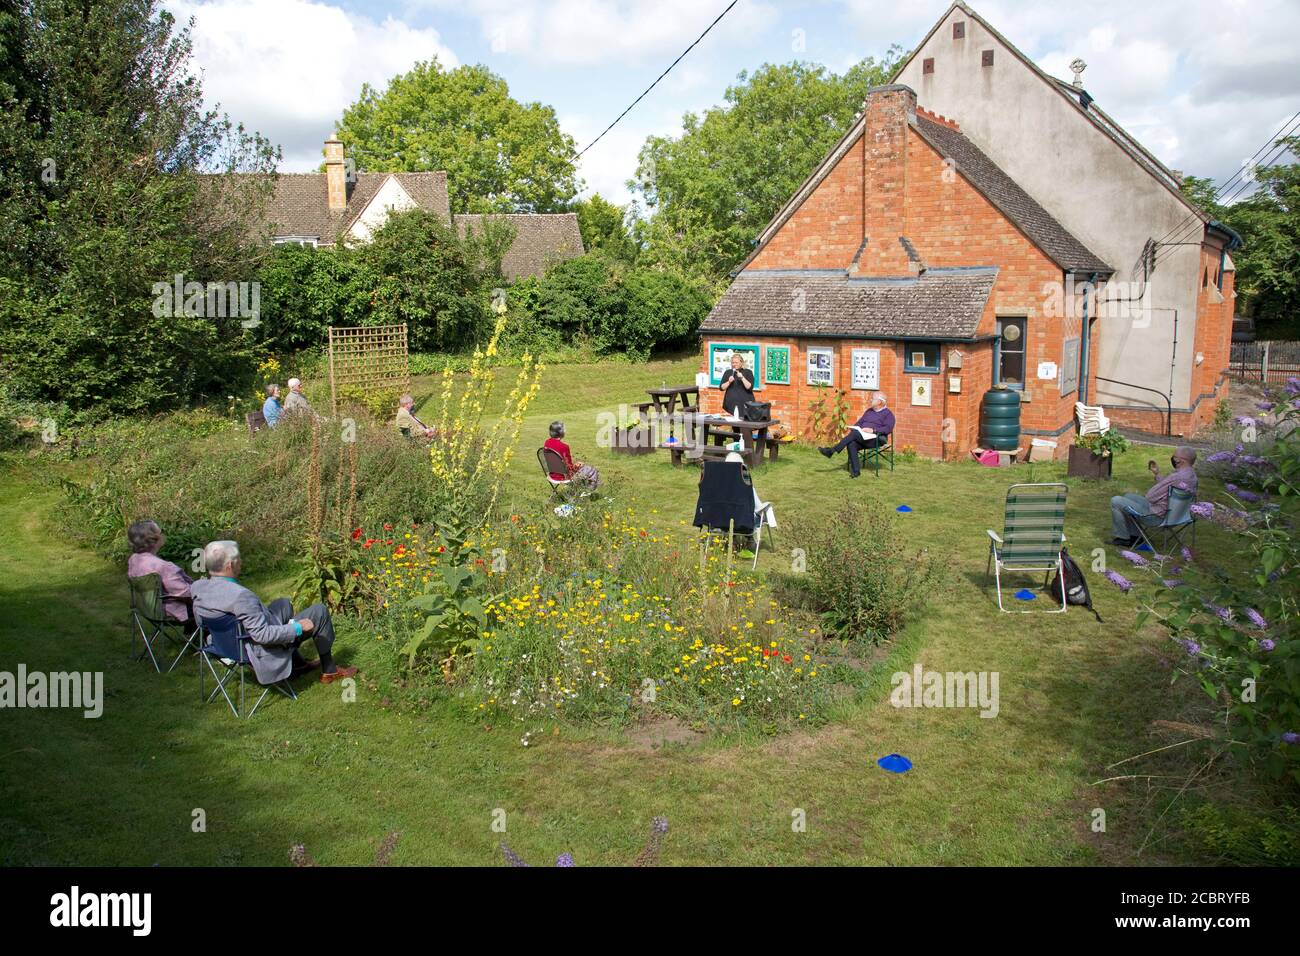 Methodistische Kirche Gottesdienst statt in der Kirche Garten während Coronavirus cris mit sozialer Distanzierung beobachtete Mickleton UK Stockfoto